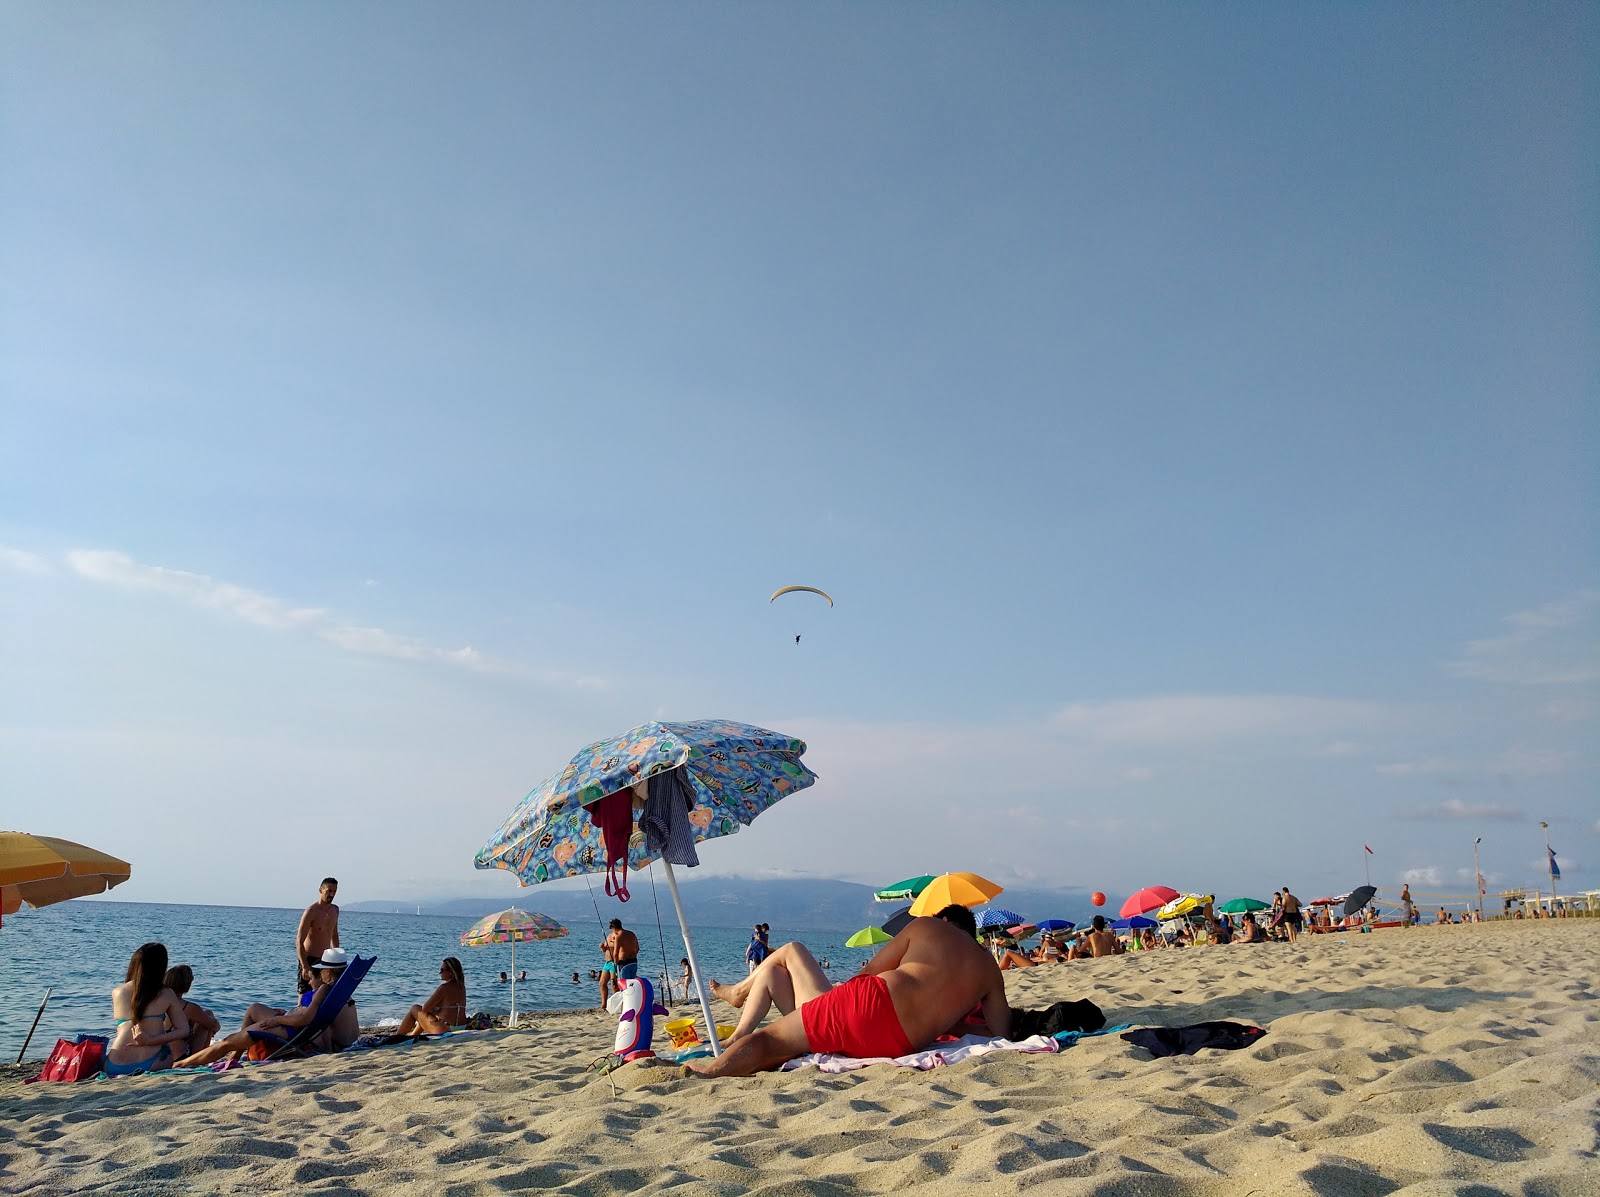 Fotografija Pizzo beach III priljubljeno mesto med poznavalci sprostitve